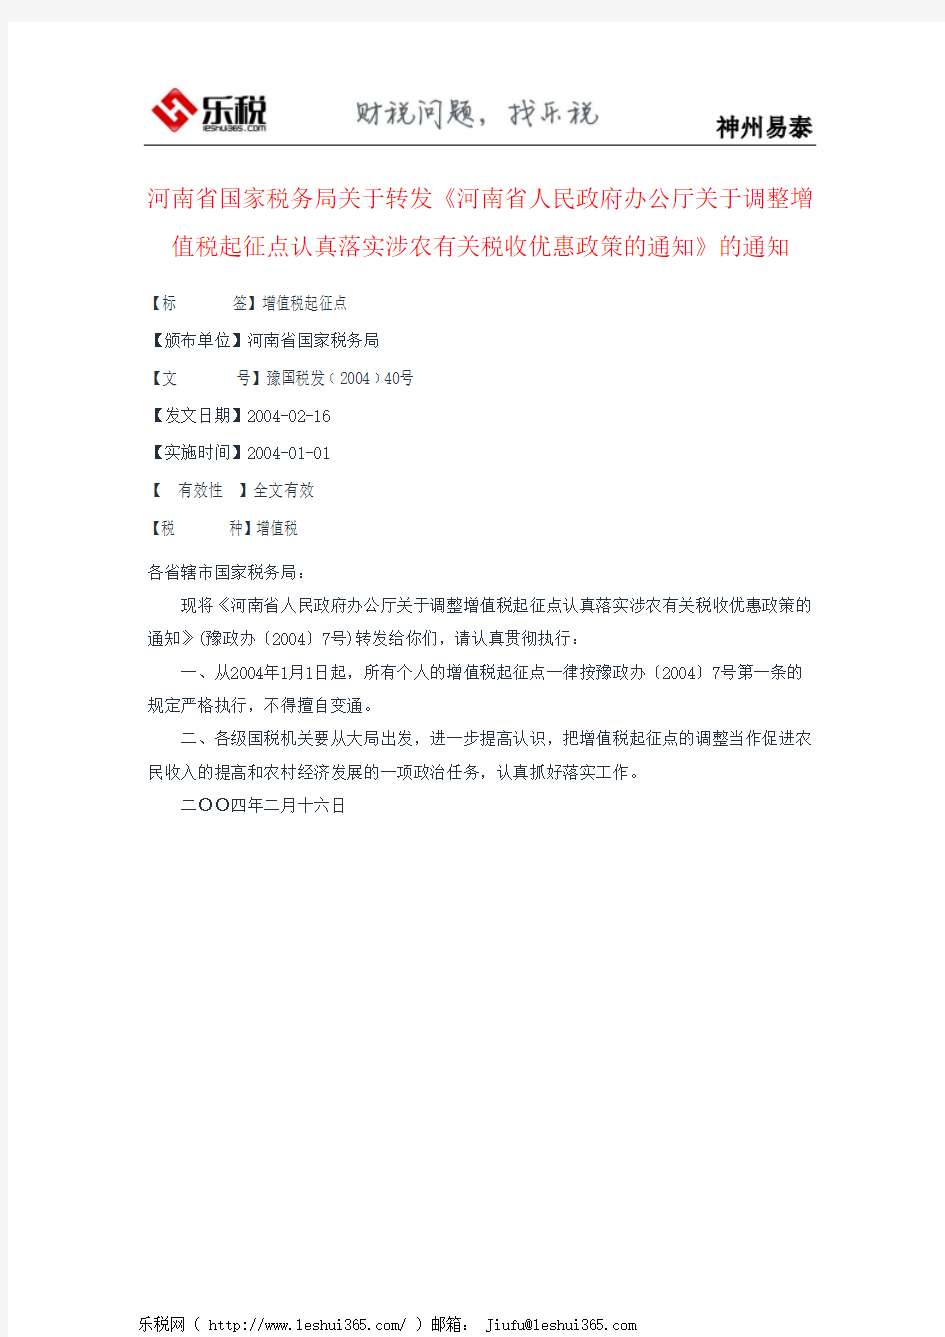 河南省国家税务局关于转发《河南省人民政府办公厅关于调整增值税